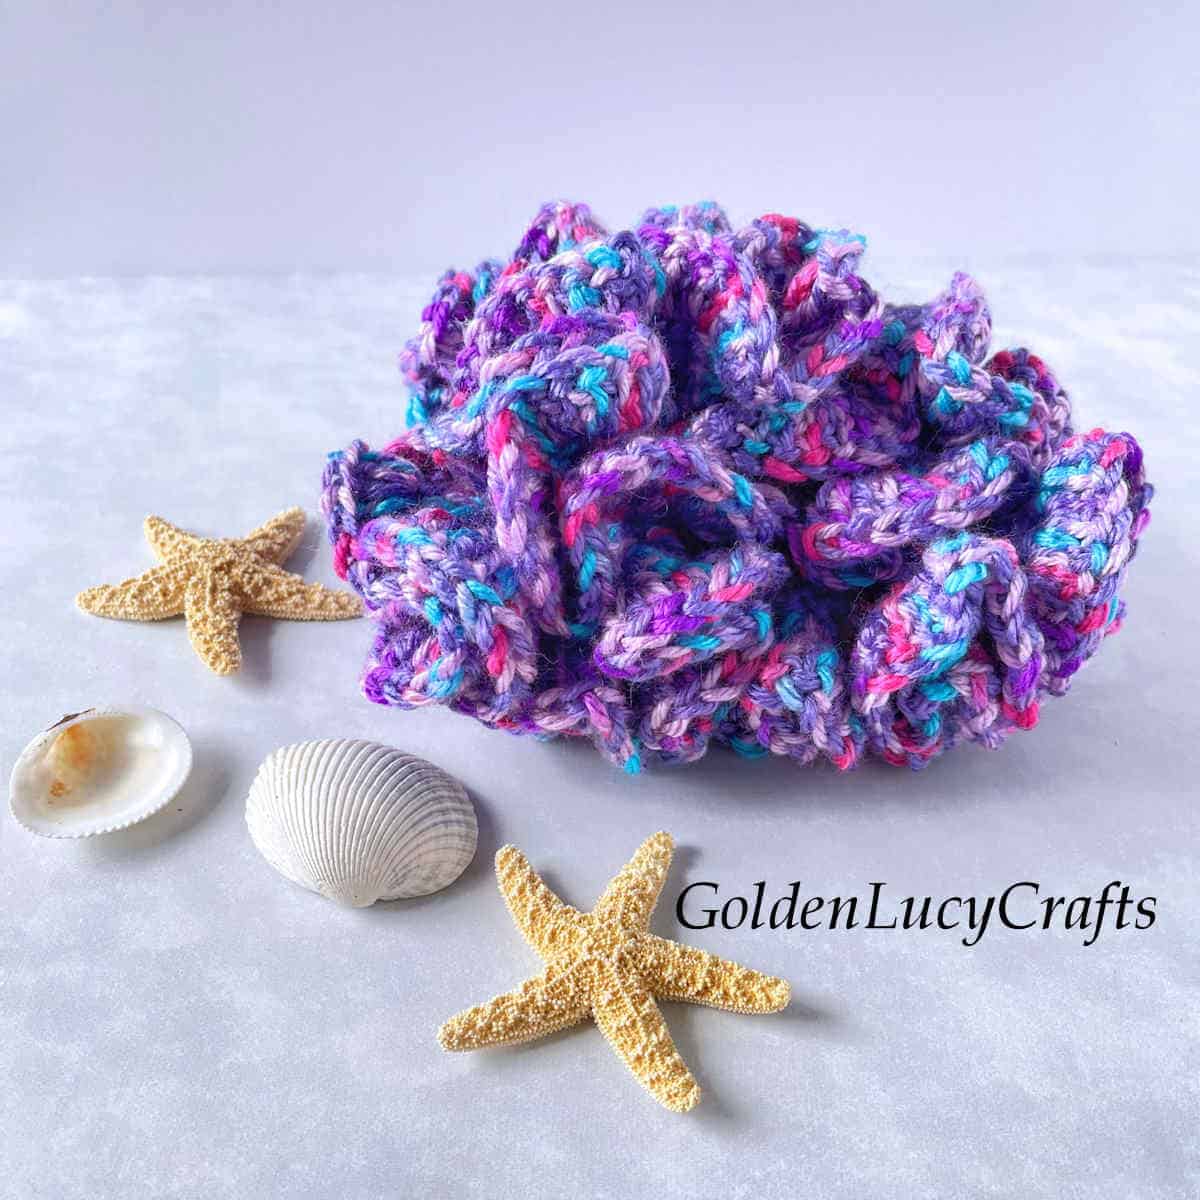 Multicolored hyperbolic coral, sea stars, and sea shells.